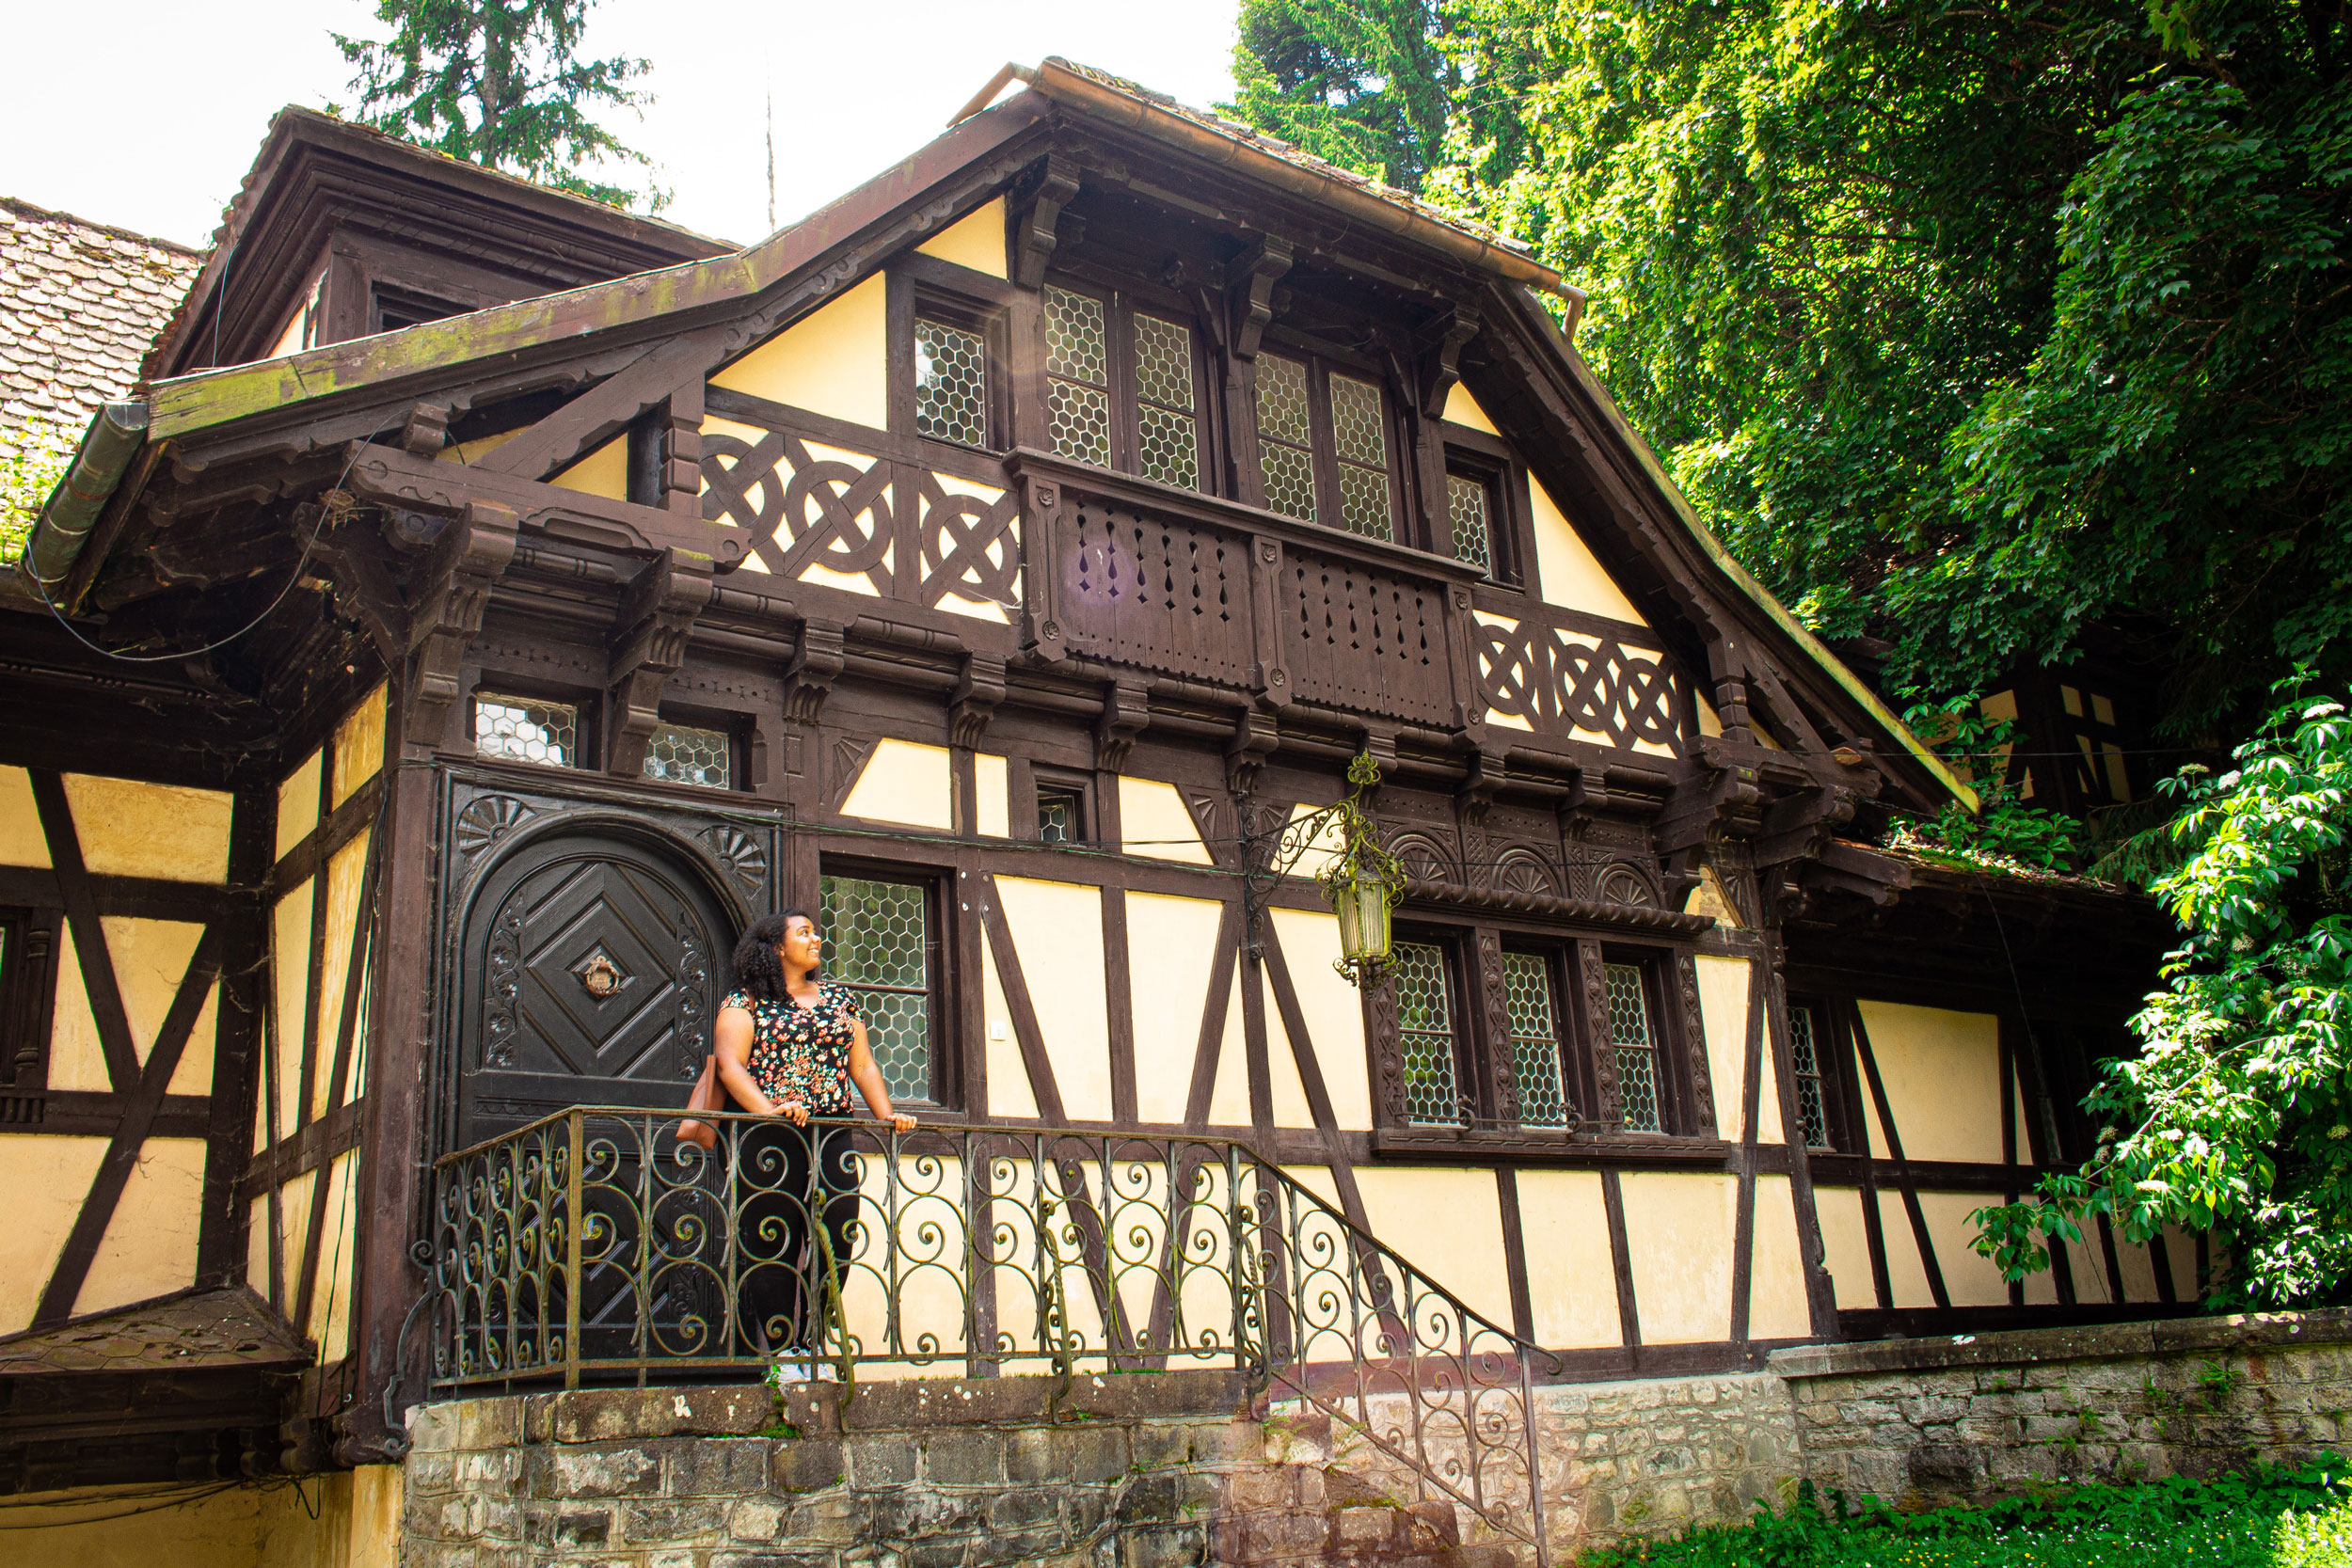 Ambar at Pelisor Palace in Sinaia Romania